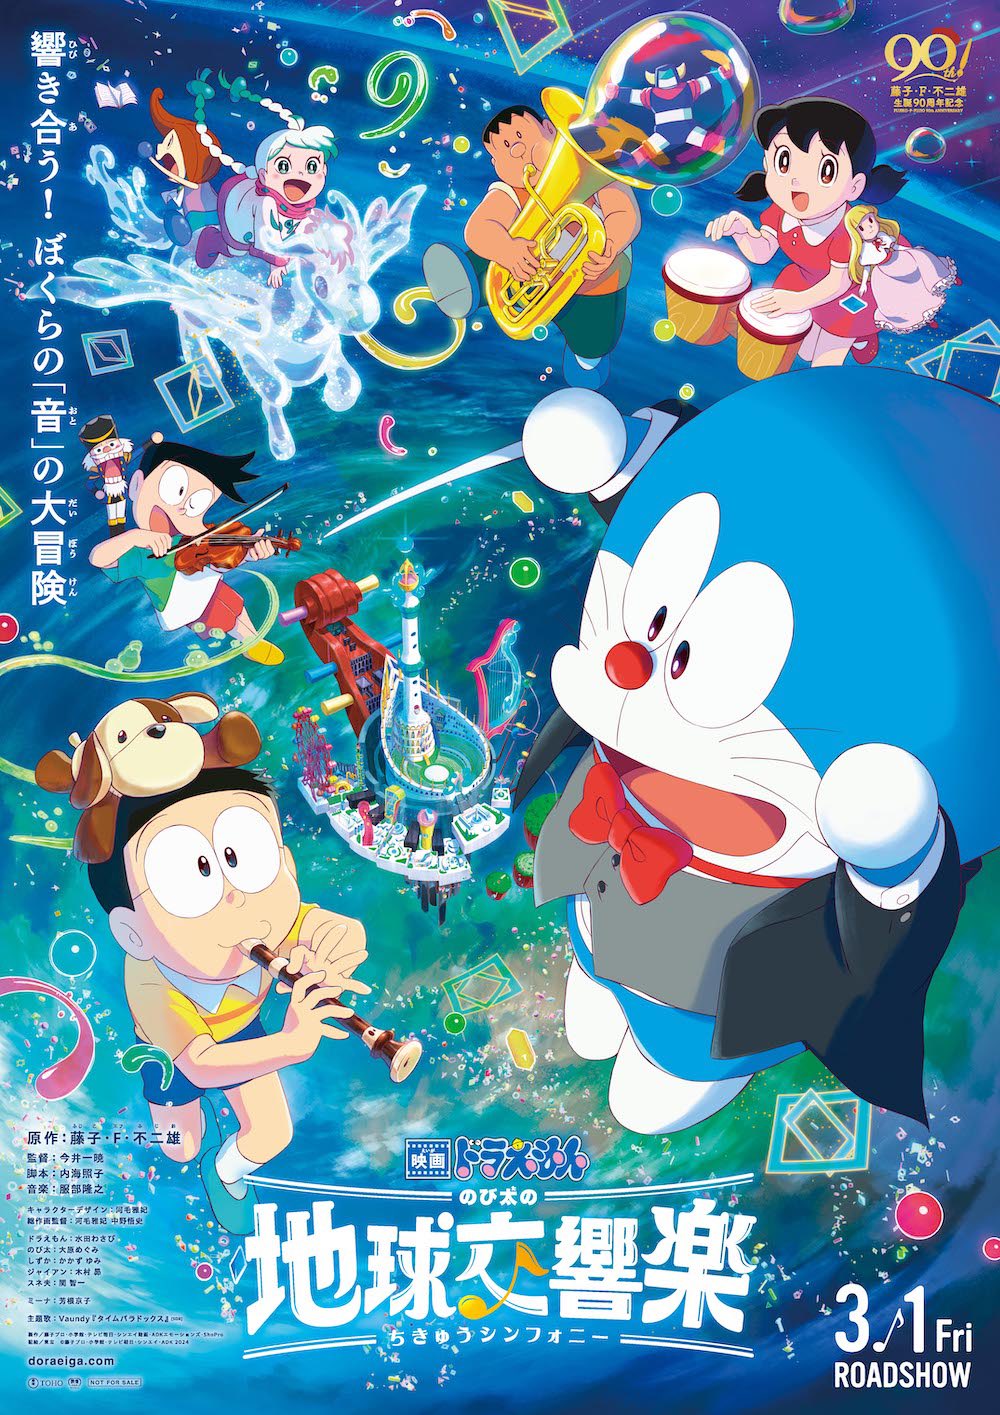 第 43 部剧场版《哆啦 A 梦：大雄的地球交响乐》预告公开，明年 3 月 1 日在日本上映